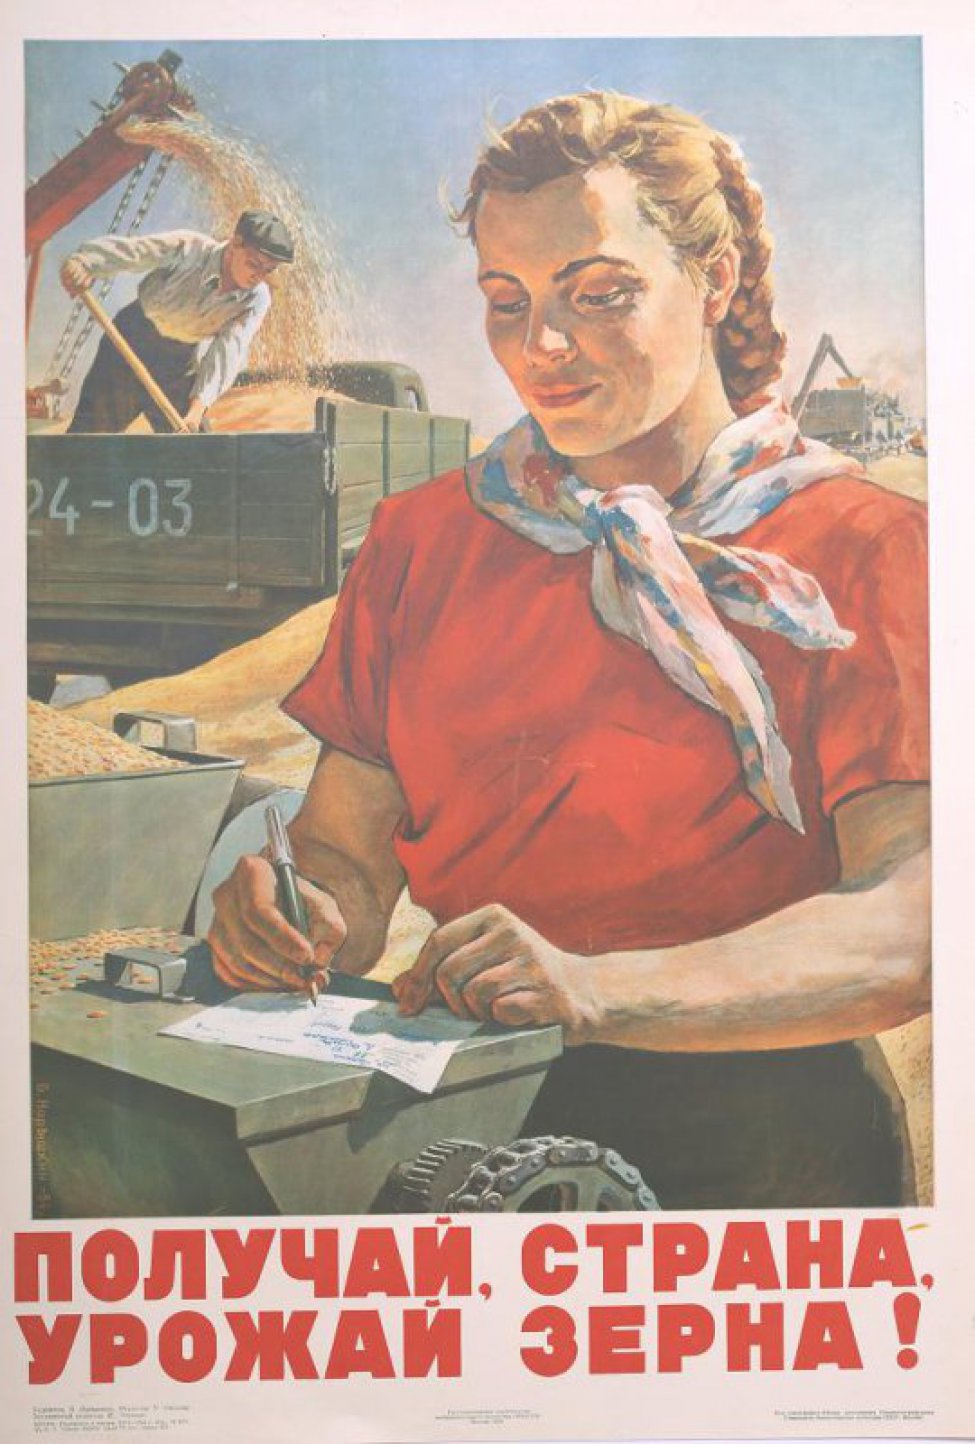 Изображена молодая белокурая женщина в красной блузке. Она заполняет накладную. Справа от нее стоит грузовая машина, в которую насыпается зерно.